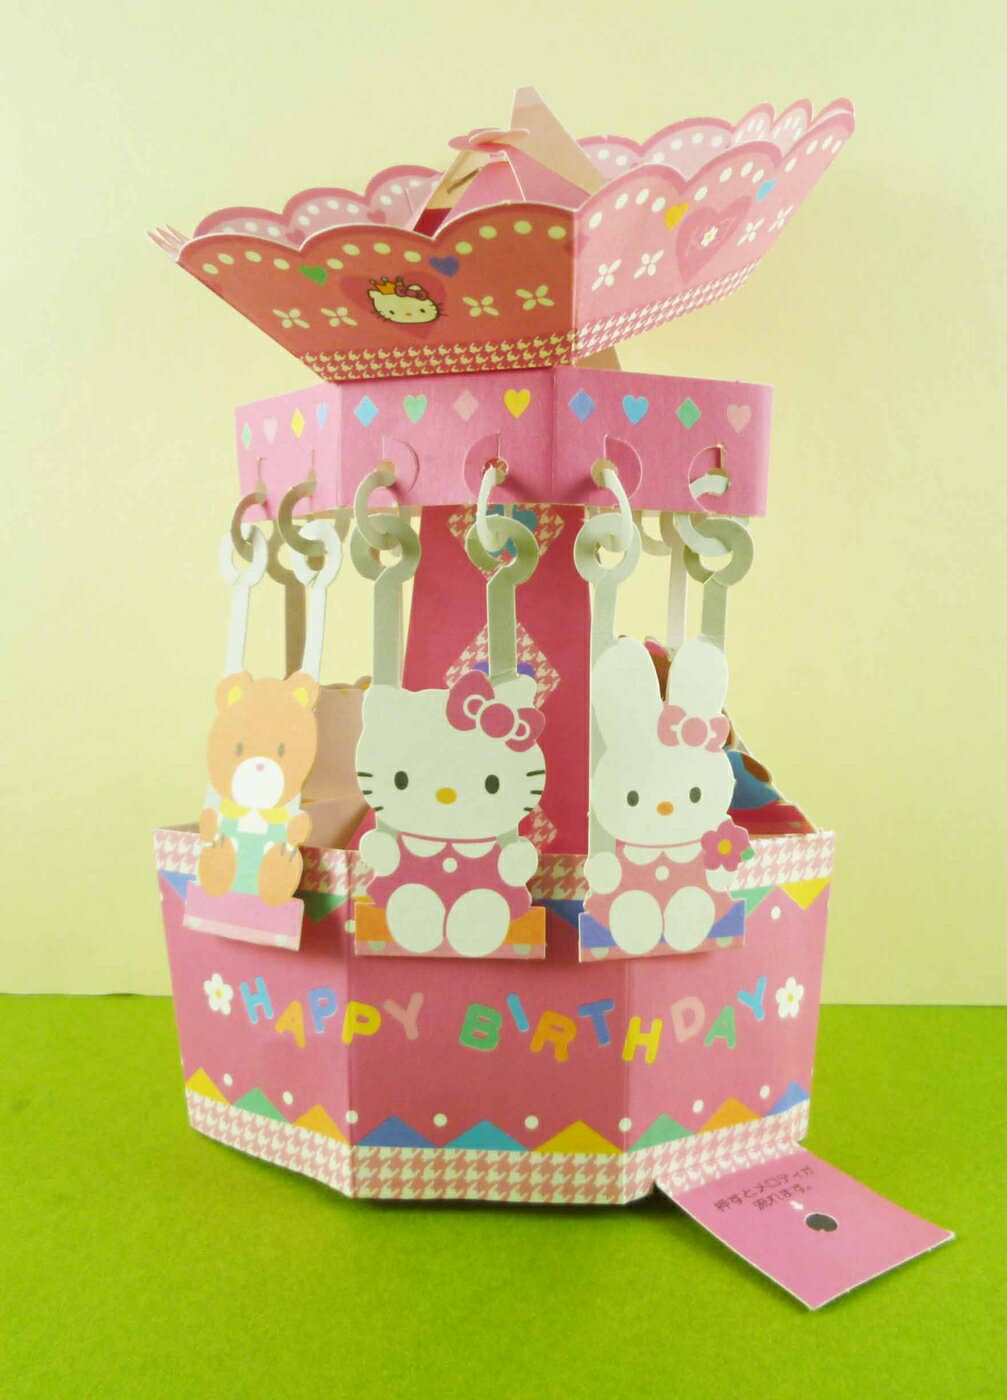 【震撼精品百貨】Hello Kitty 凱蒂貓 音樂鈴 震撼日式精品百貨